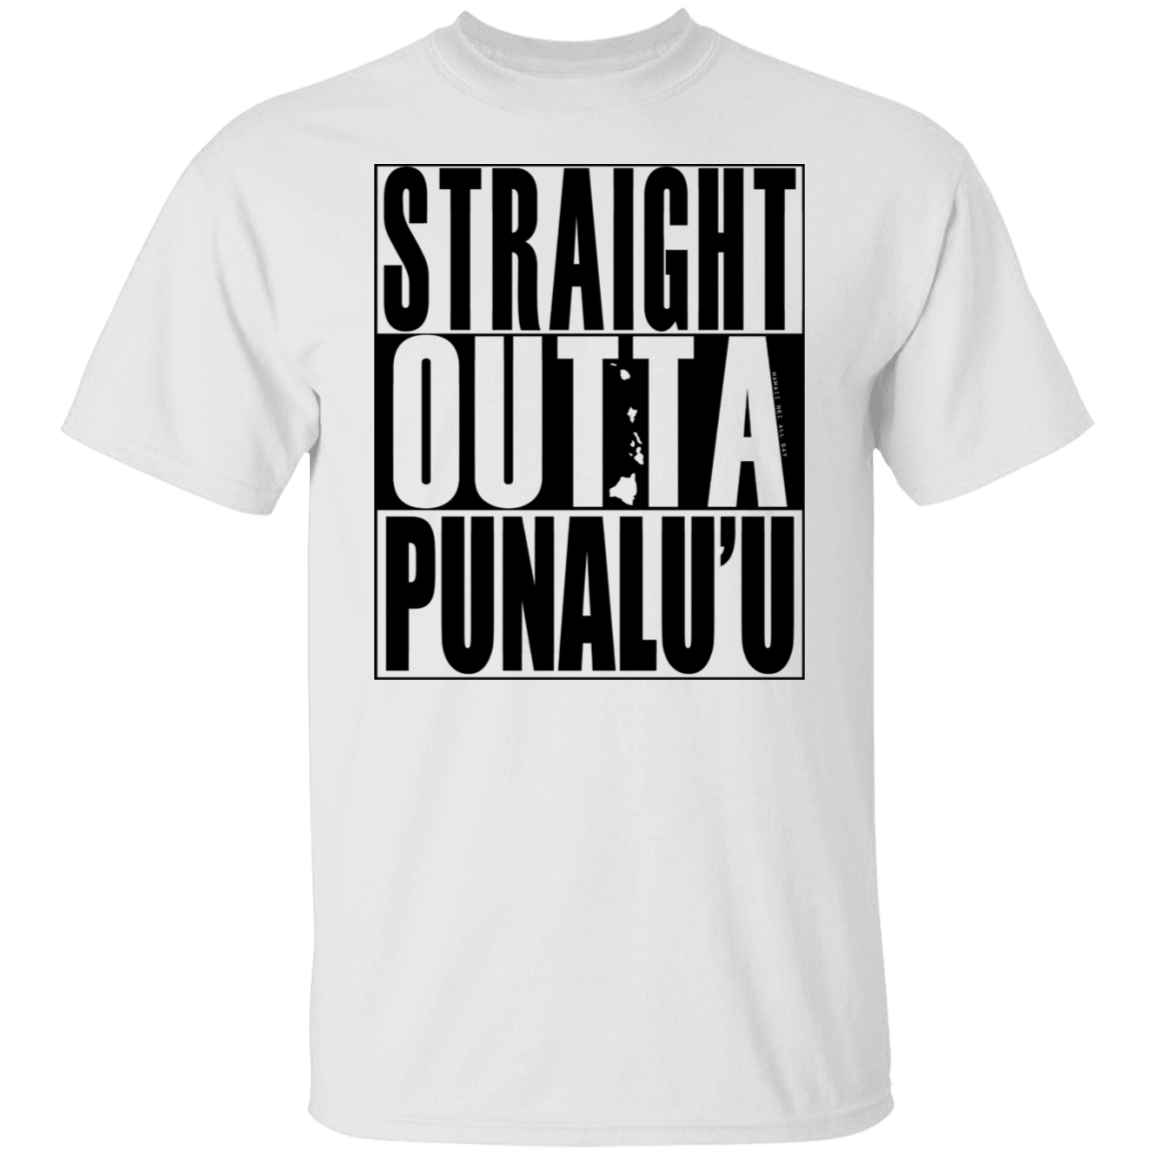 Straight Outta Punalu'u(black ink) T-Shirt